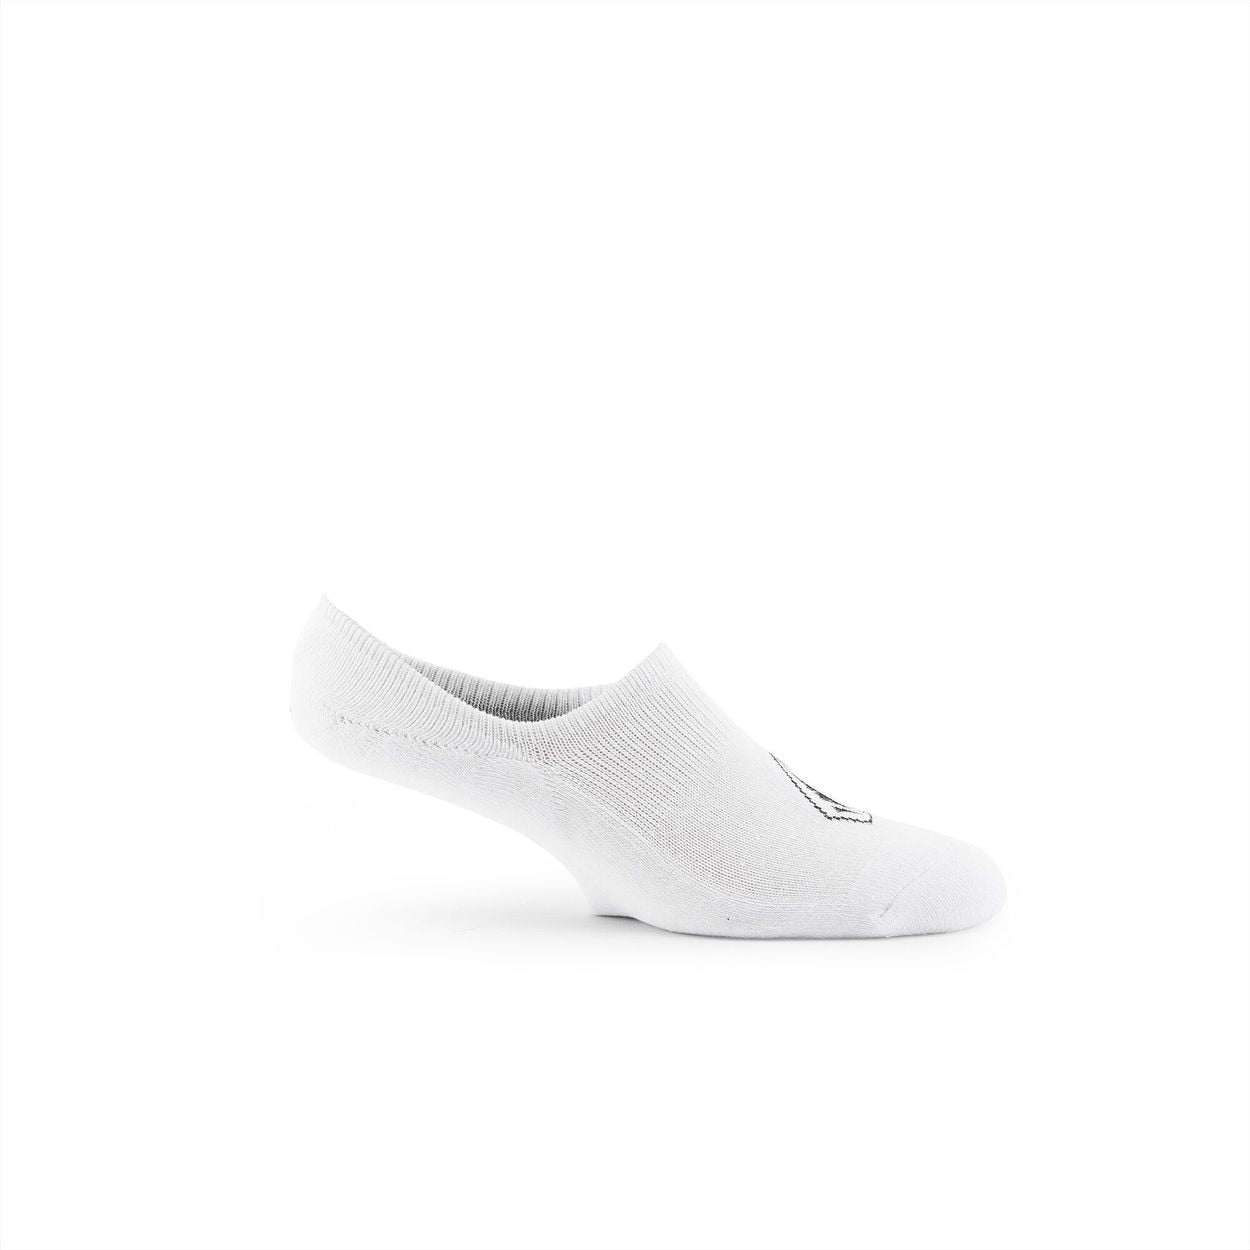 Volcom No Show Stone Socks 3 Pack - White